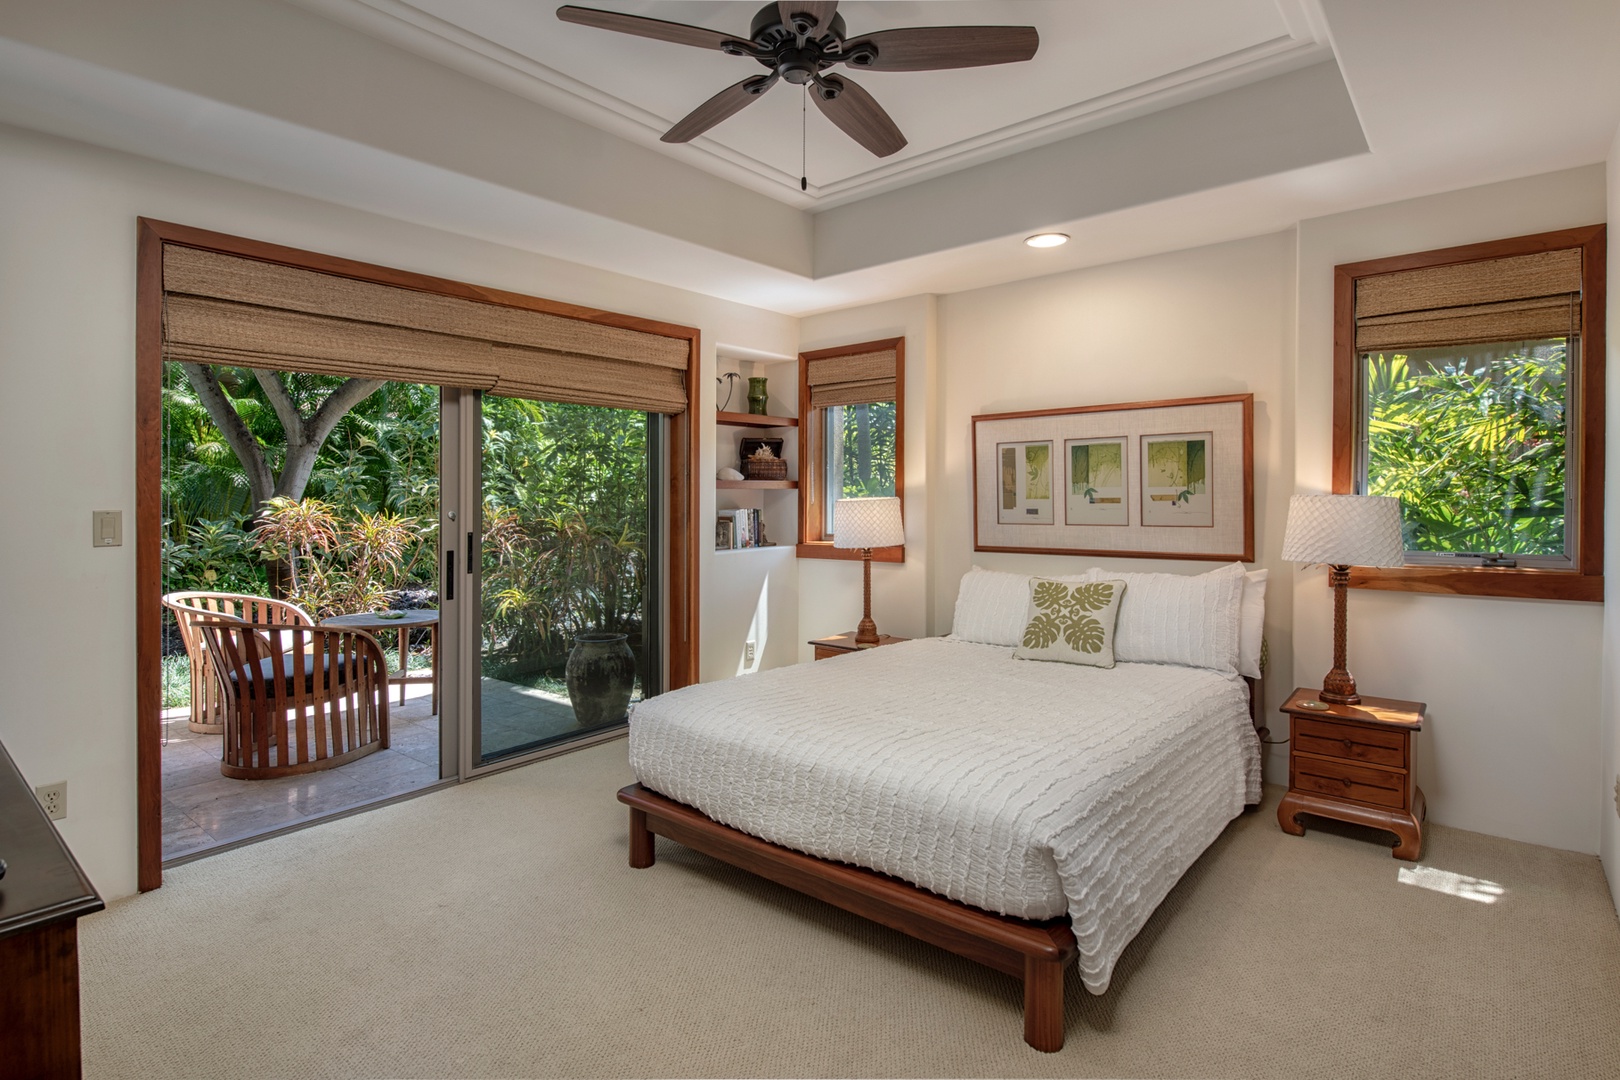 Kailua Kona Vacation Rentals, 3BD Golf Villa (3101) at Four Seasons Resort at Hualalai - Alternate view of third bedroom.